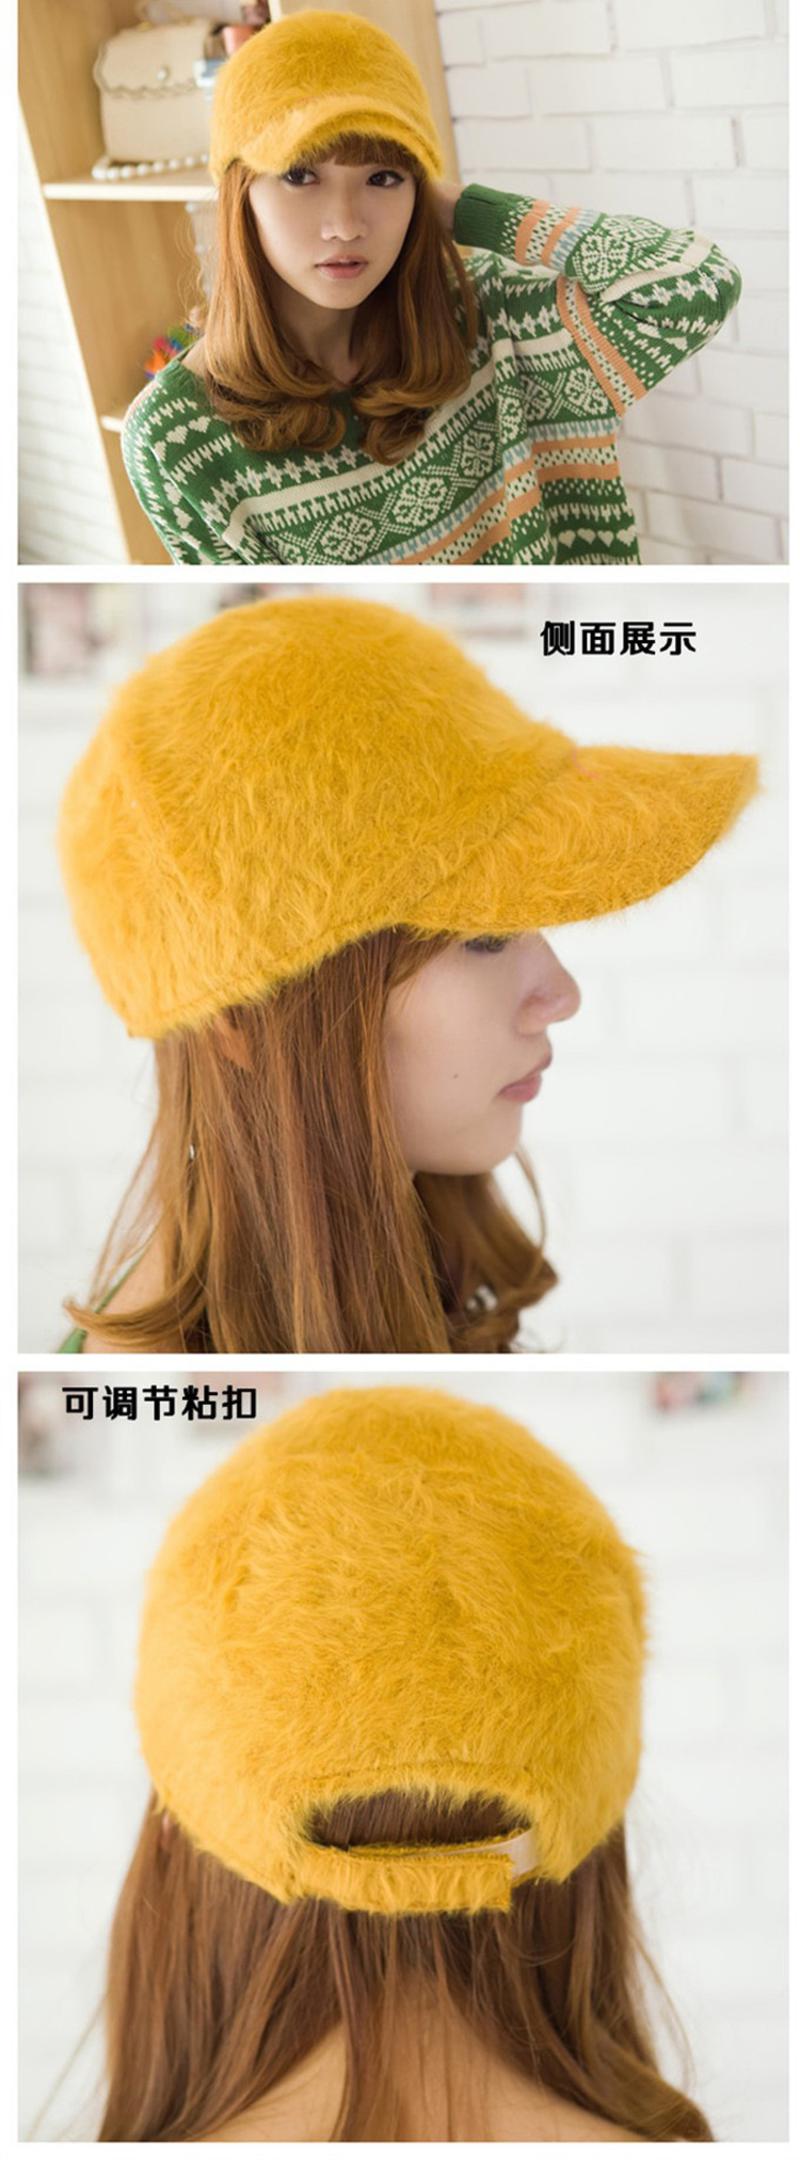 冬季棒球帽 韩版时尚纯色仿兔毛鸭舌帽子 B0034